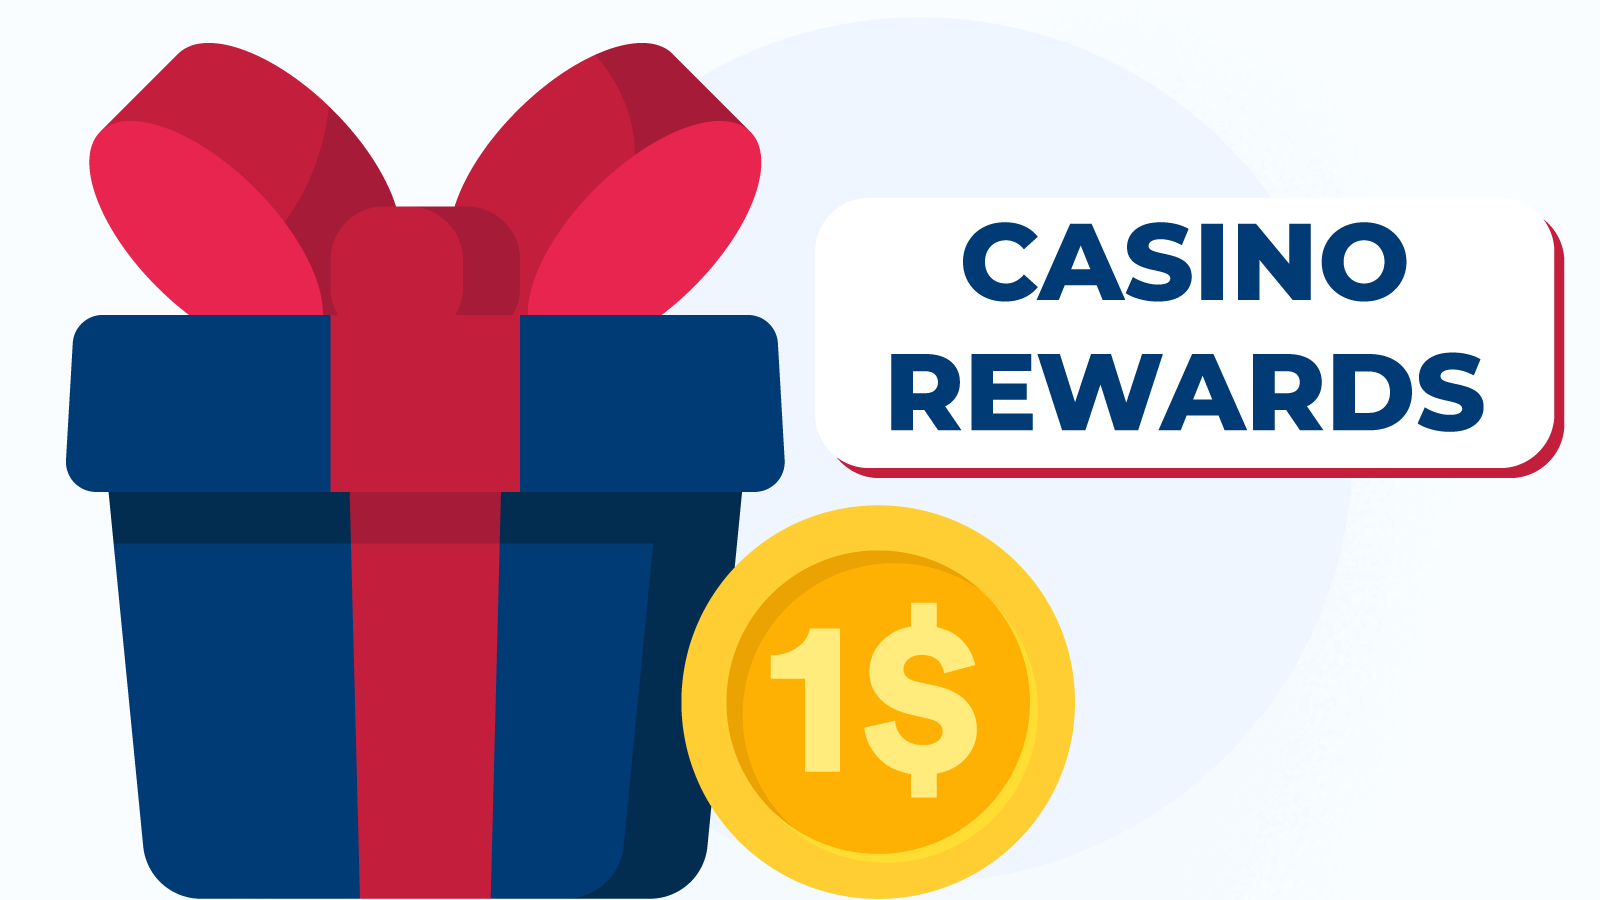 More of Casino Rewards $1 deposit bonuses